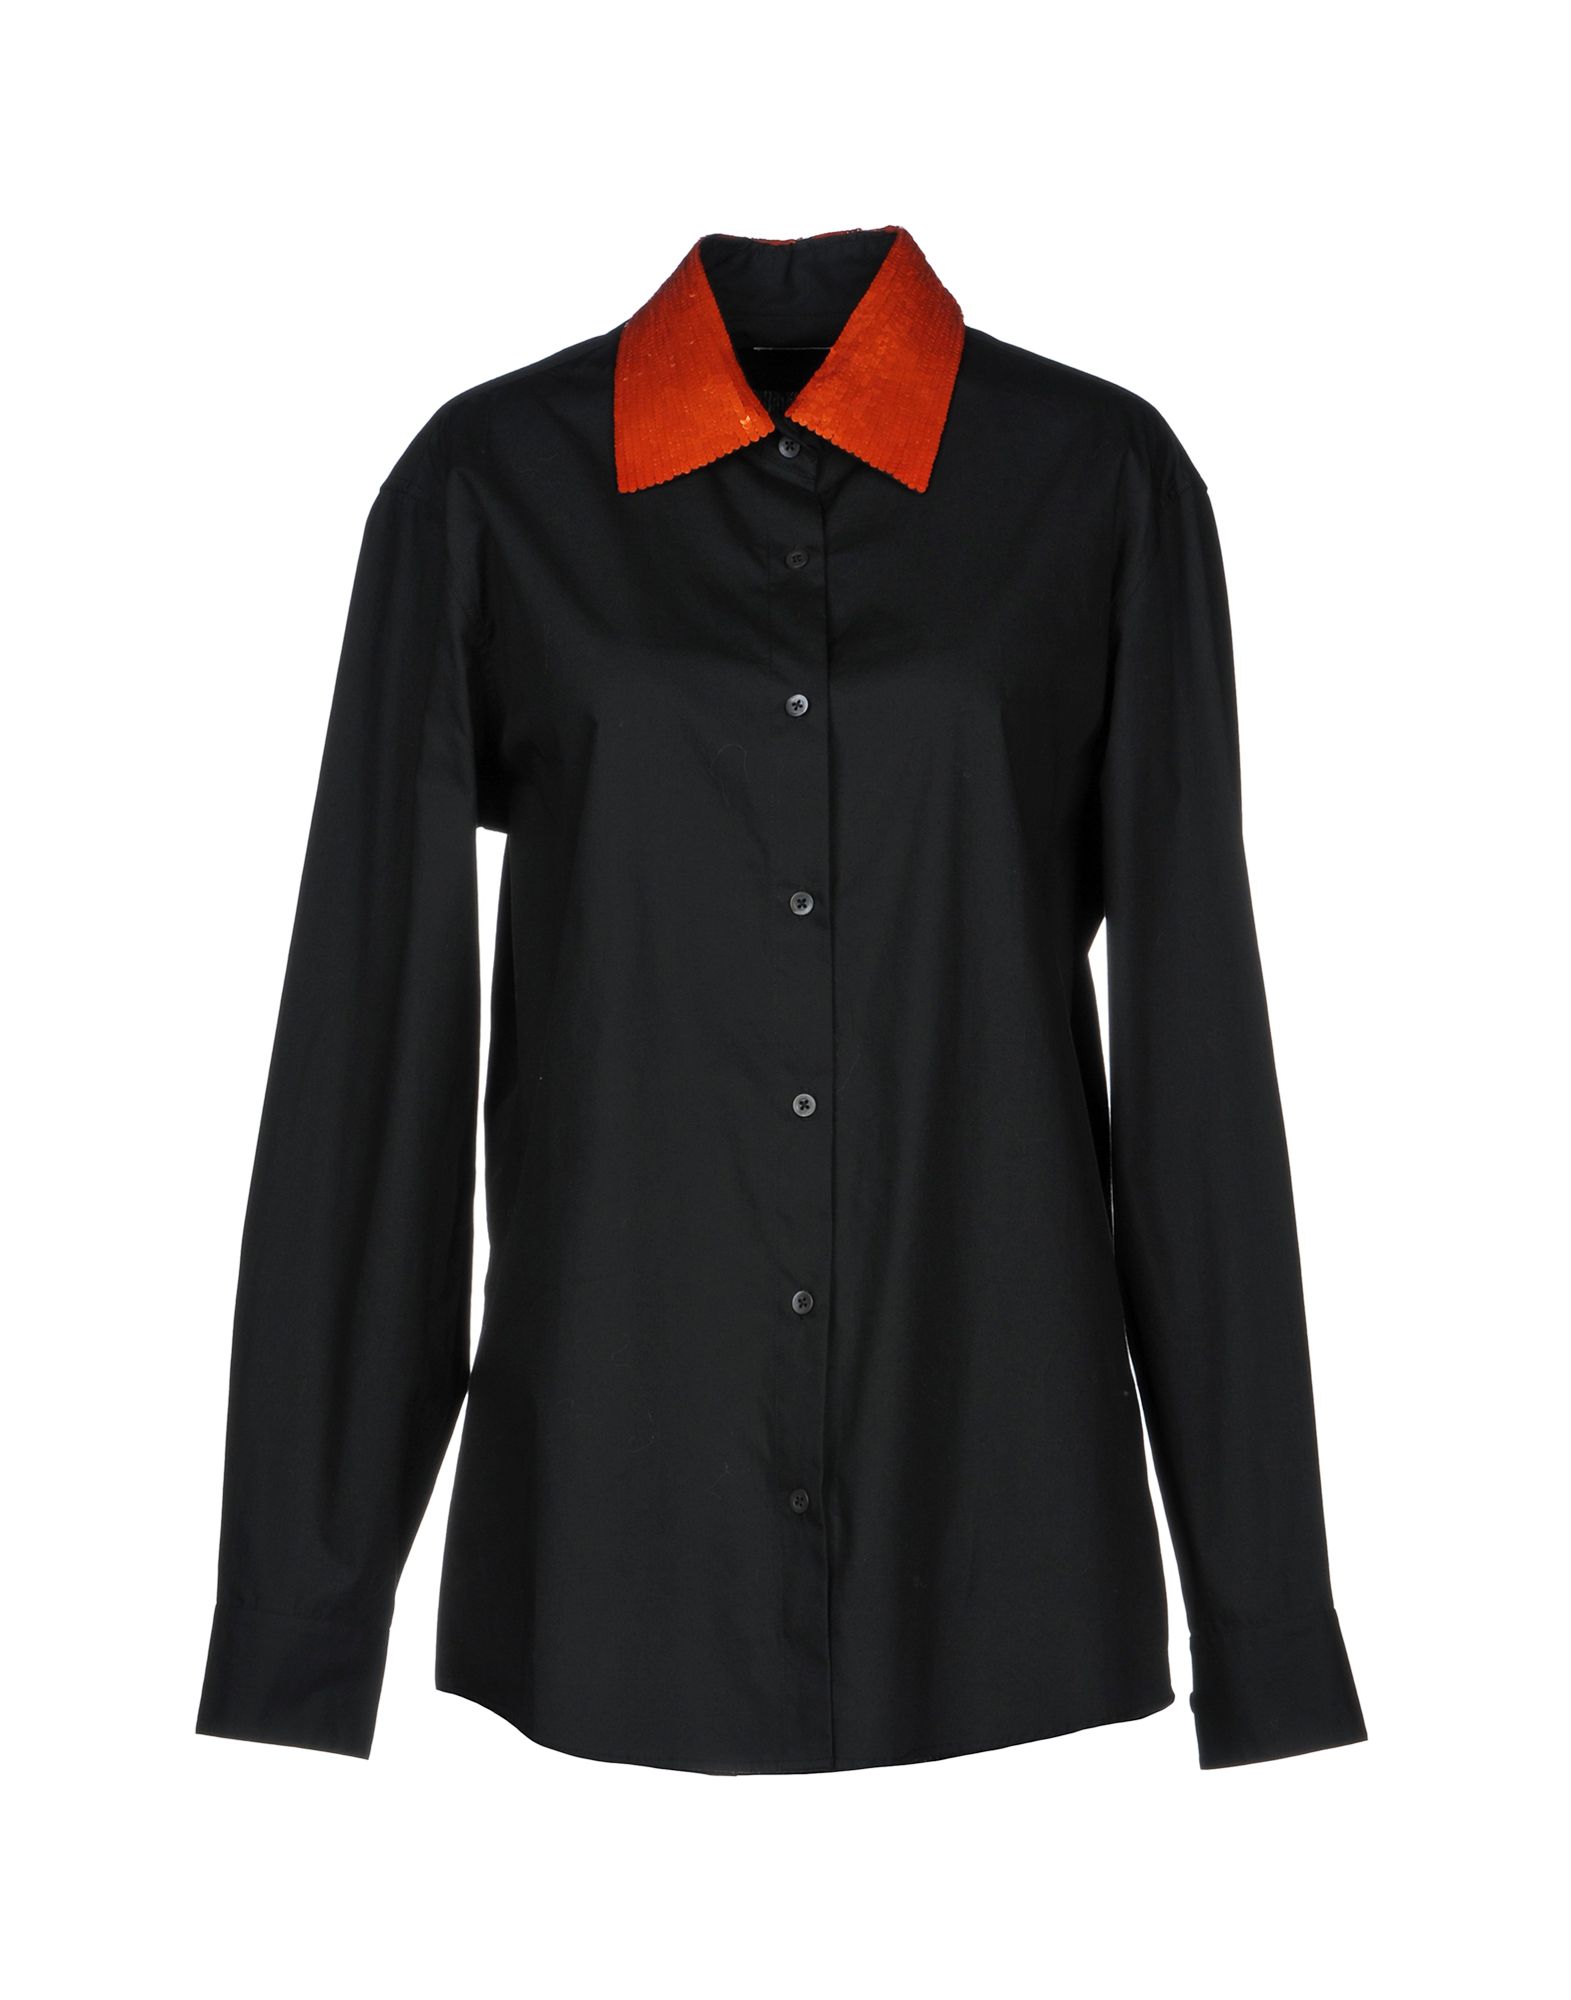 DRIES VAN NOTEN Solid color shirts & blouses,38737630MV 5